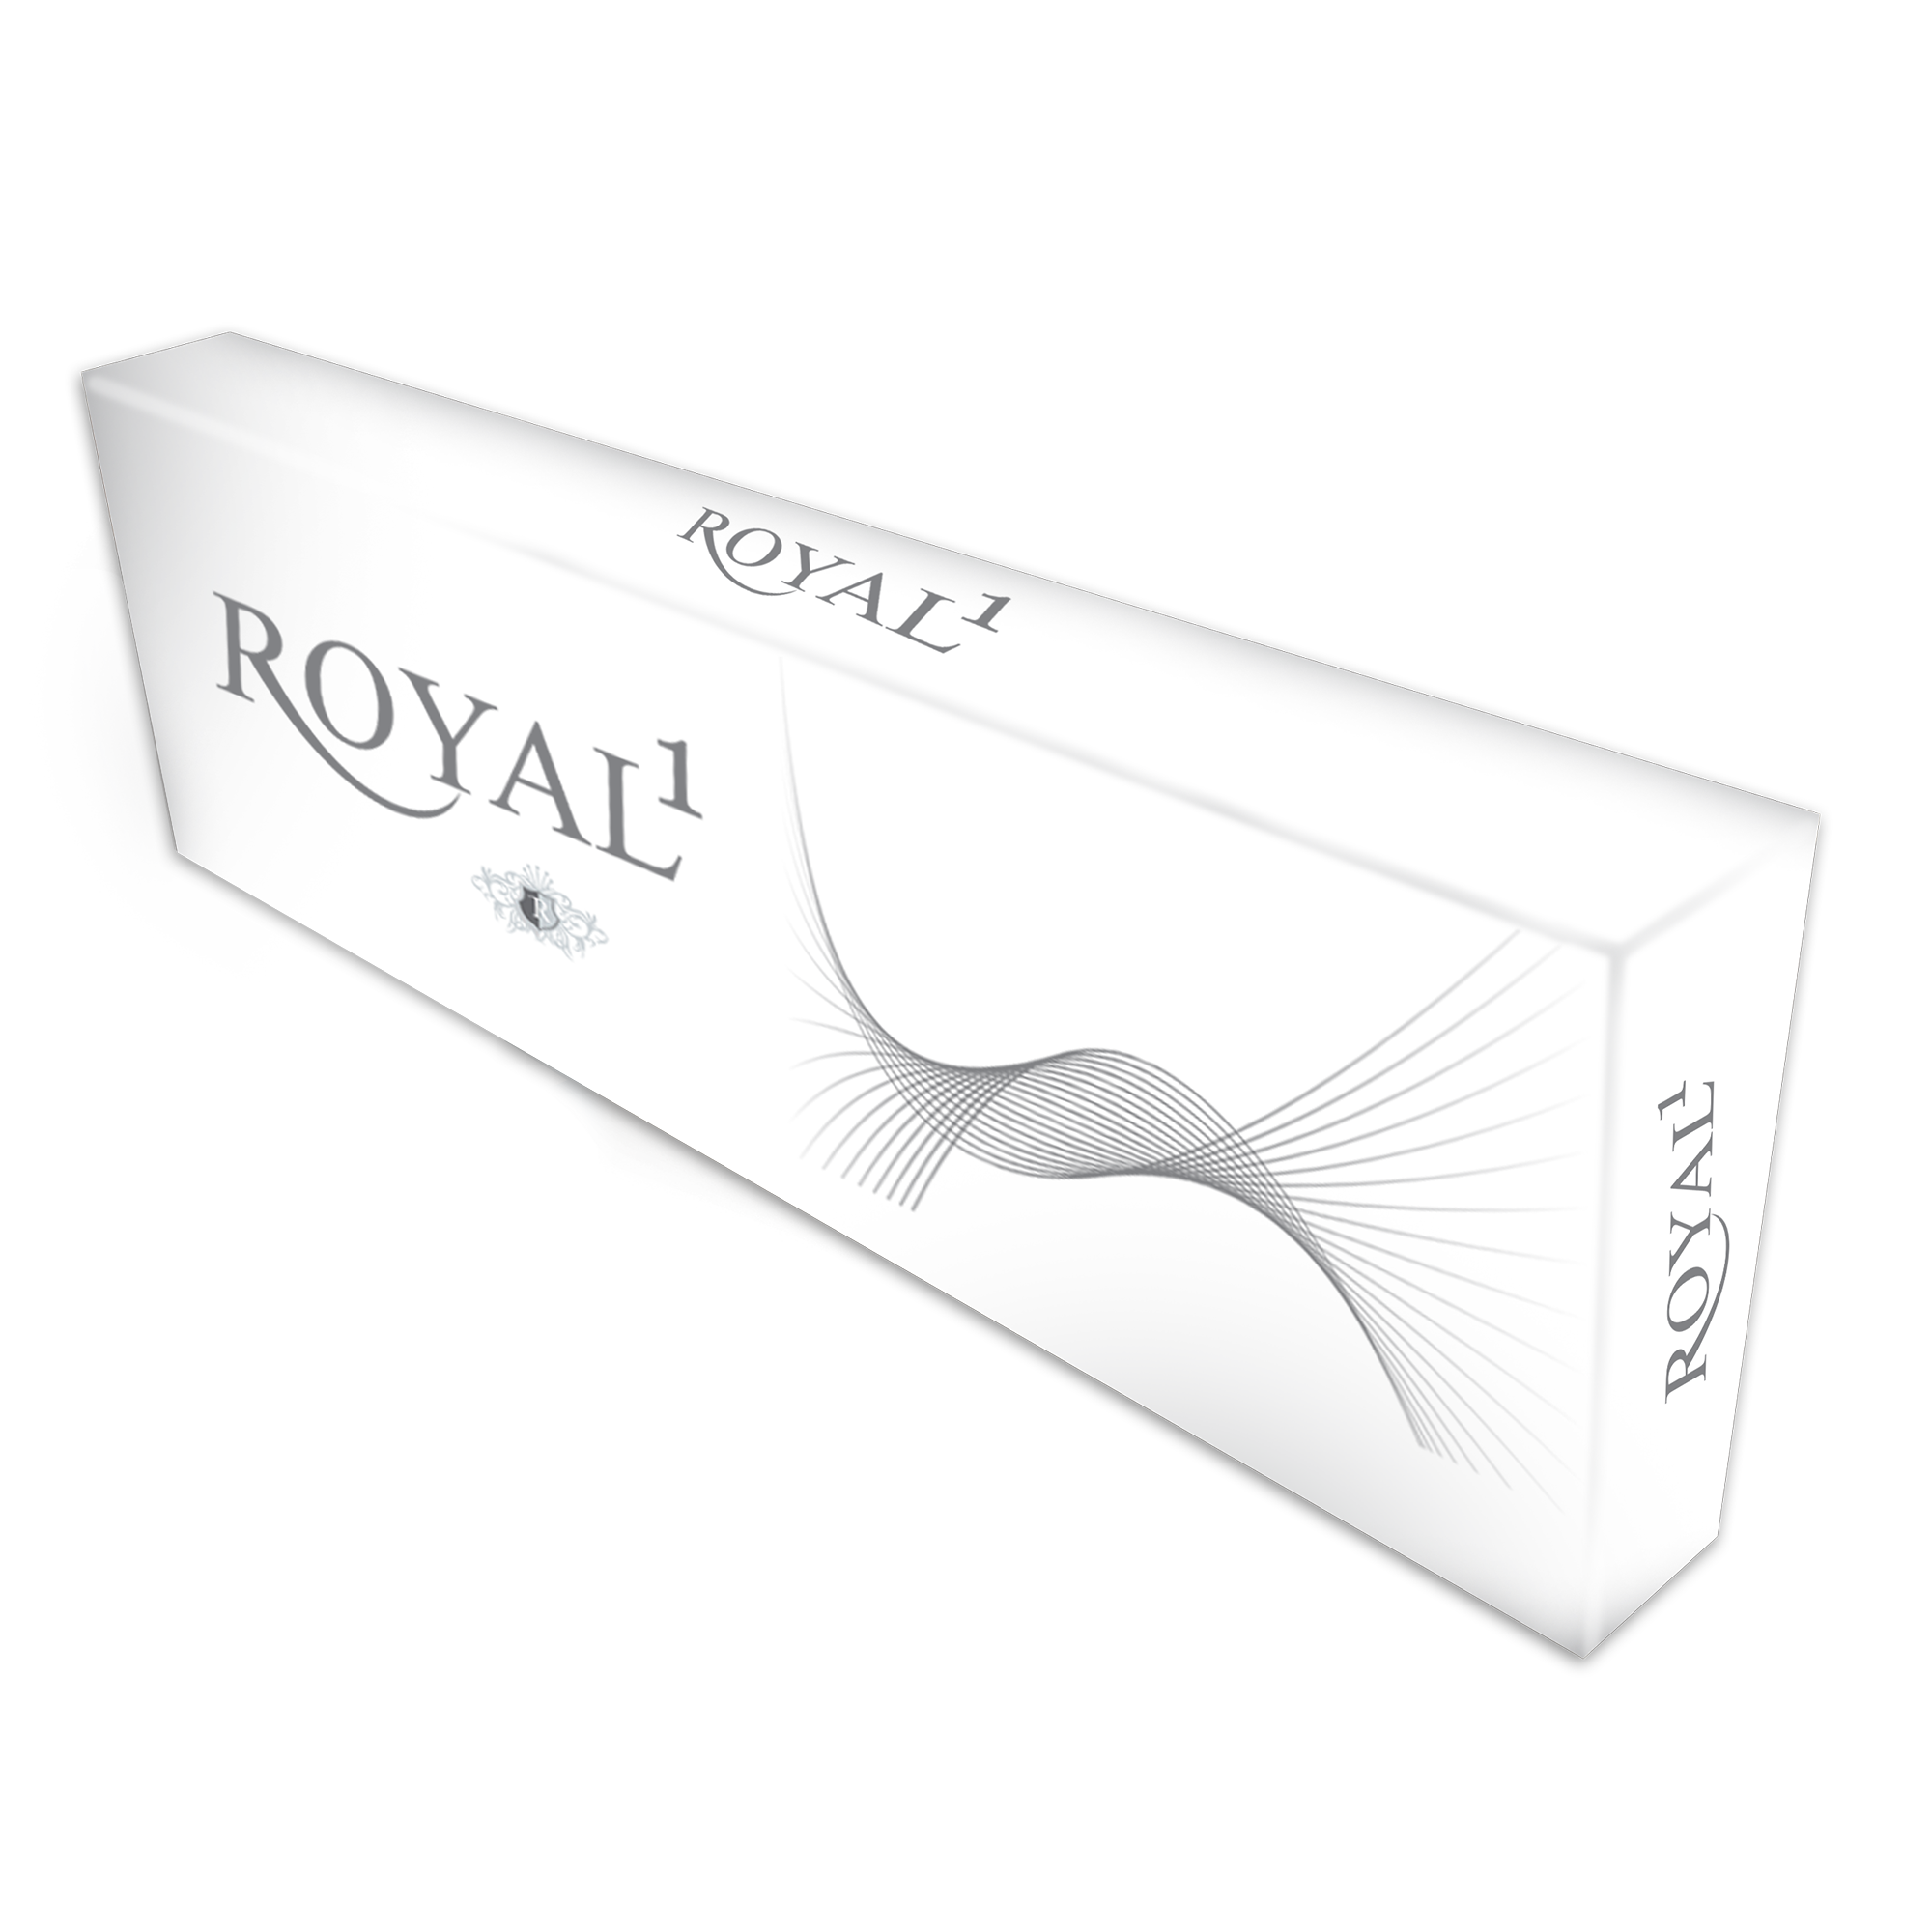  Royal1 White box 